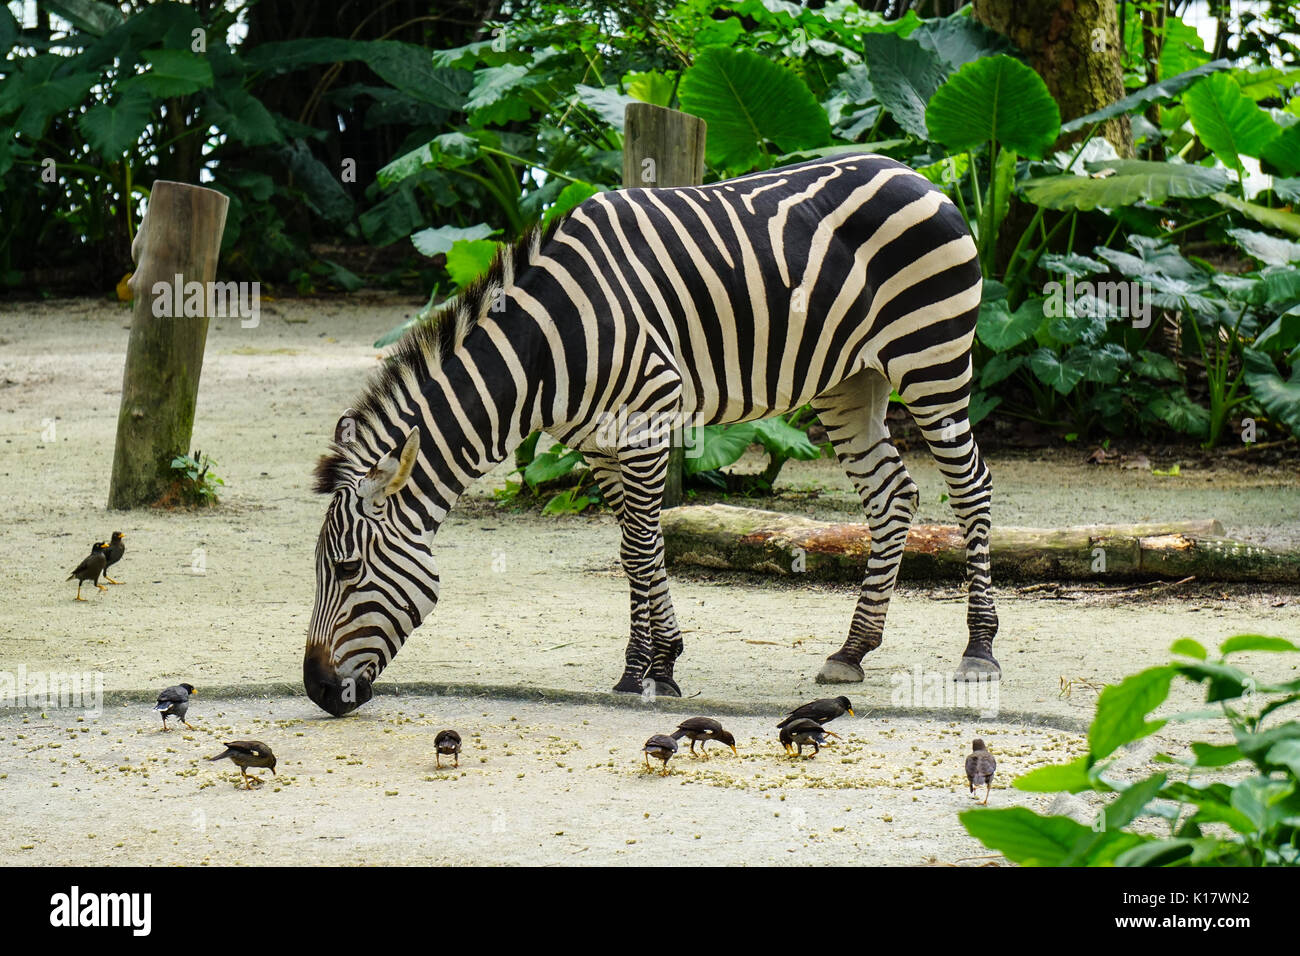 Ein zebra Fütterung im Zoo in sonniger Tag. Zebras sind das Thema der afrikanischen Märchen, Sagen, wie Sie Ihre Streifen bekam. Stockfoto